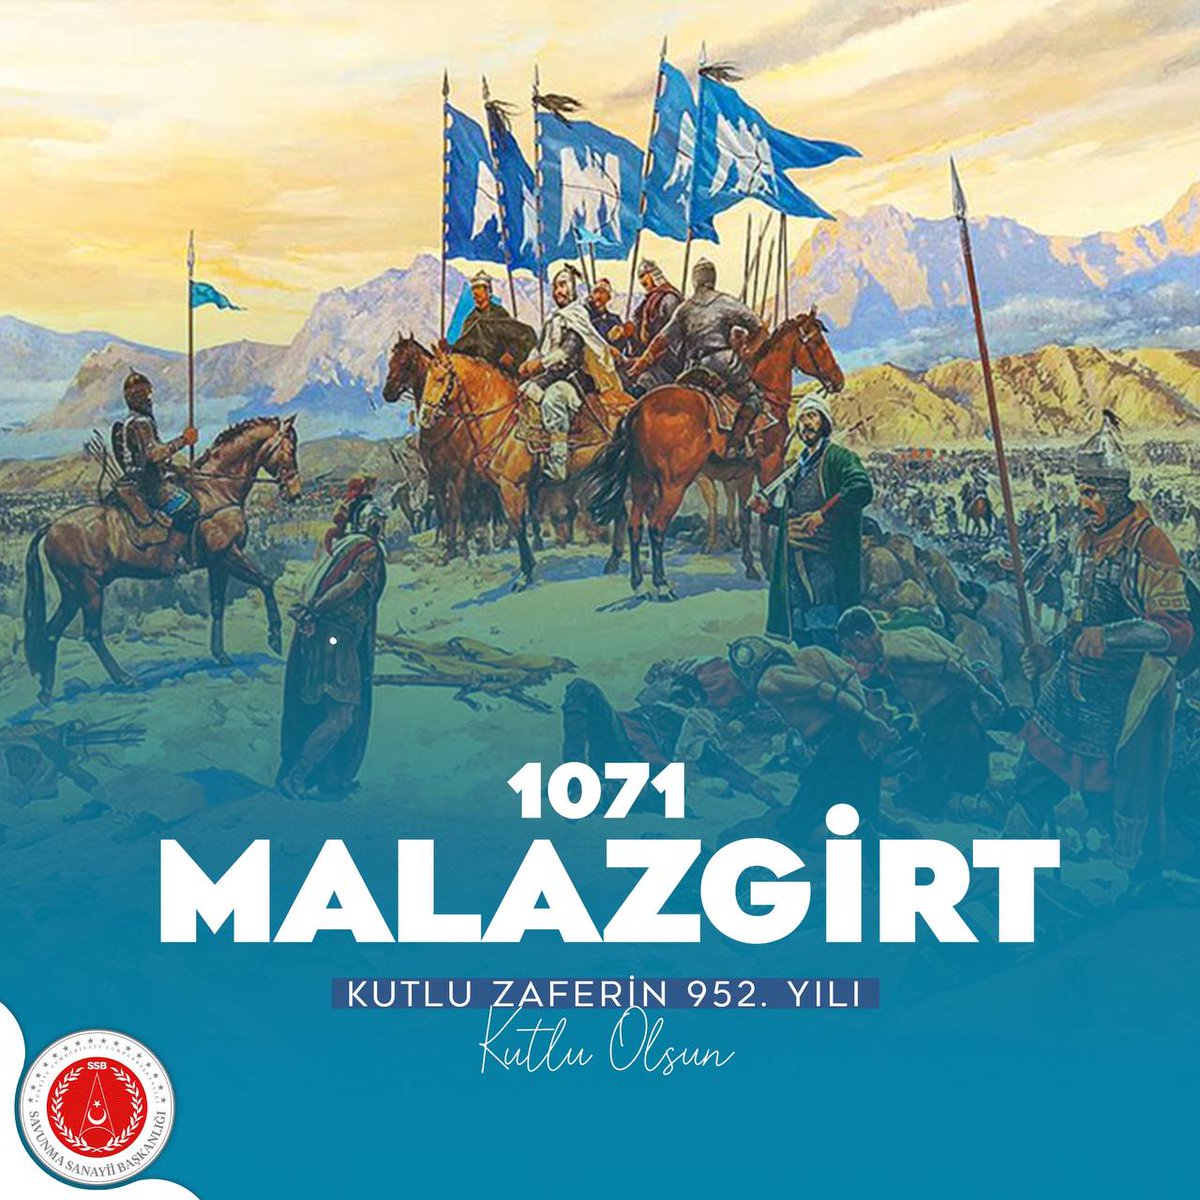 İstiklalimizin mayası, istikbalimizin meşalesi 1071 #MalazgirtZaferi'mizin 952. yıl dönümü kutlu olsun. Malazgirt destanını yazan Sultan Alparslan’ı ve onun muzaffer ordusunu saygı ve rahmetle anıyoruz.